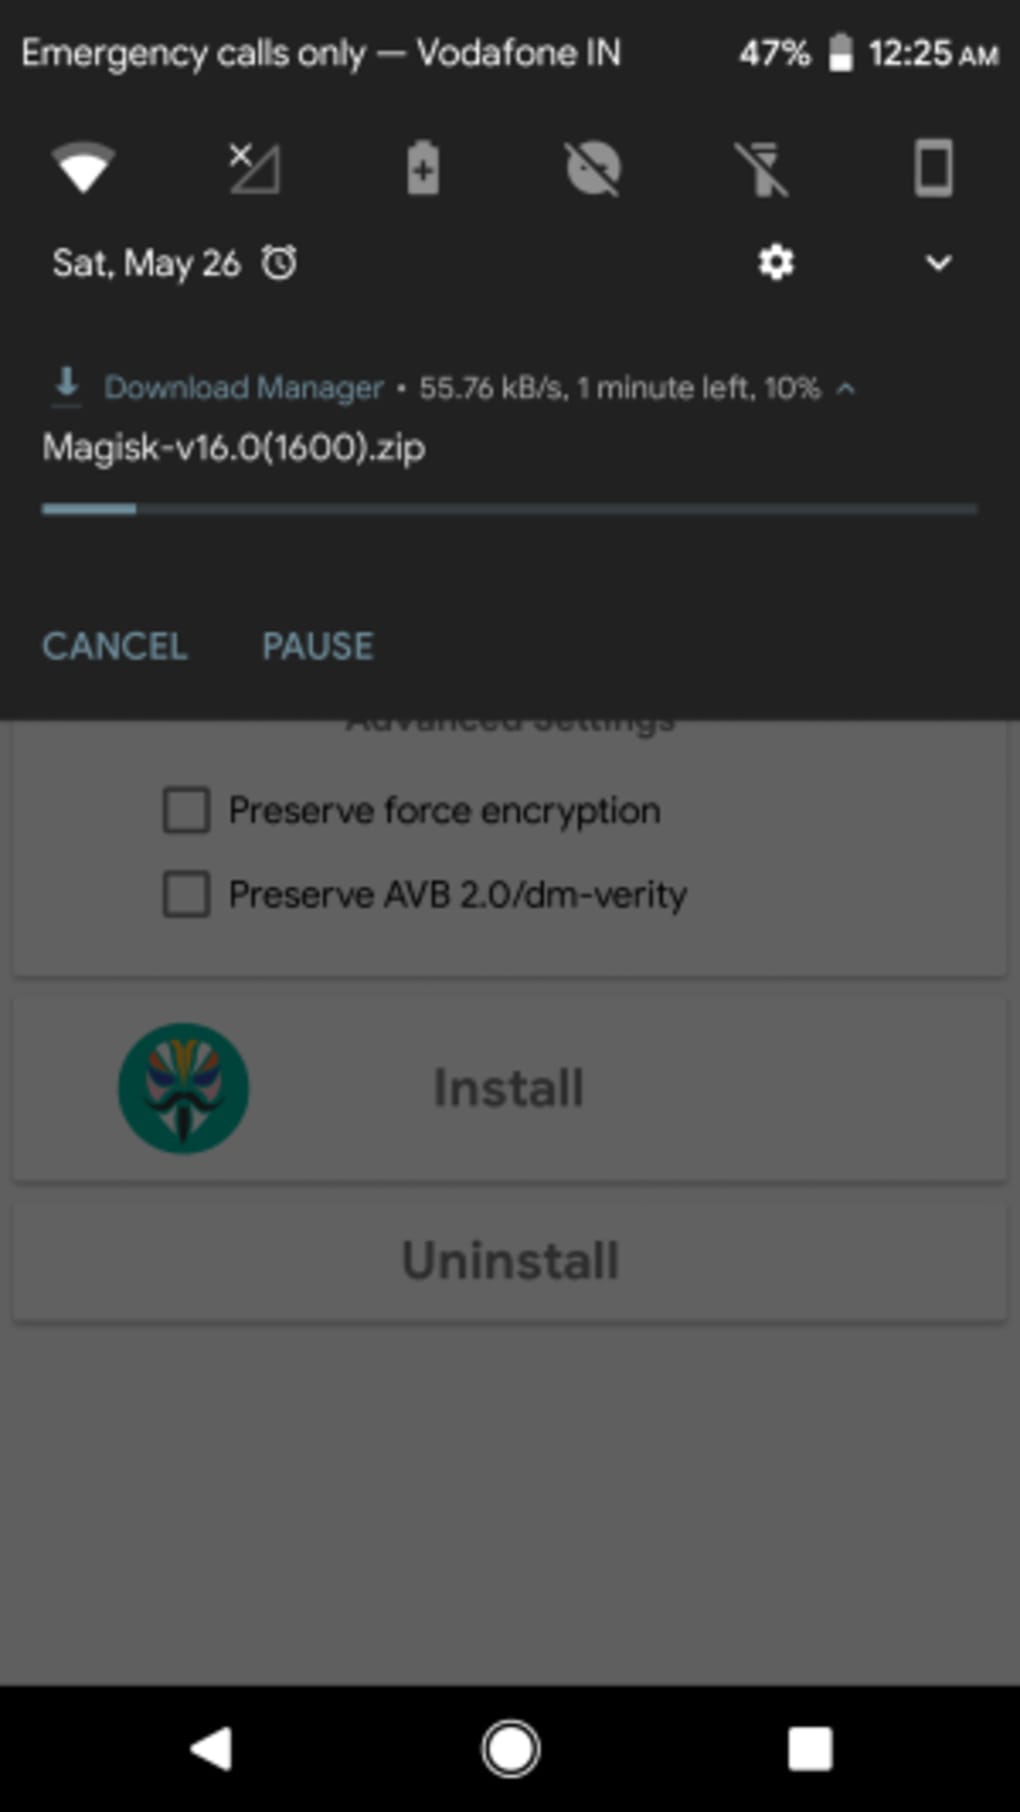 Install Magisk 25.2 on Latest NOX Emulator